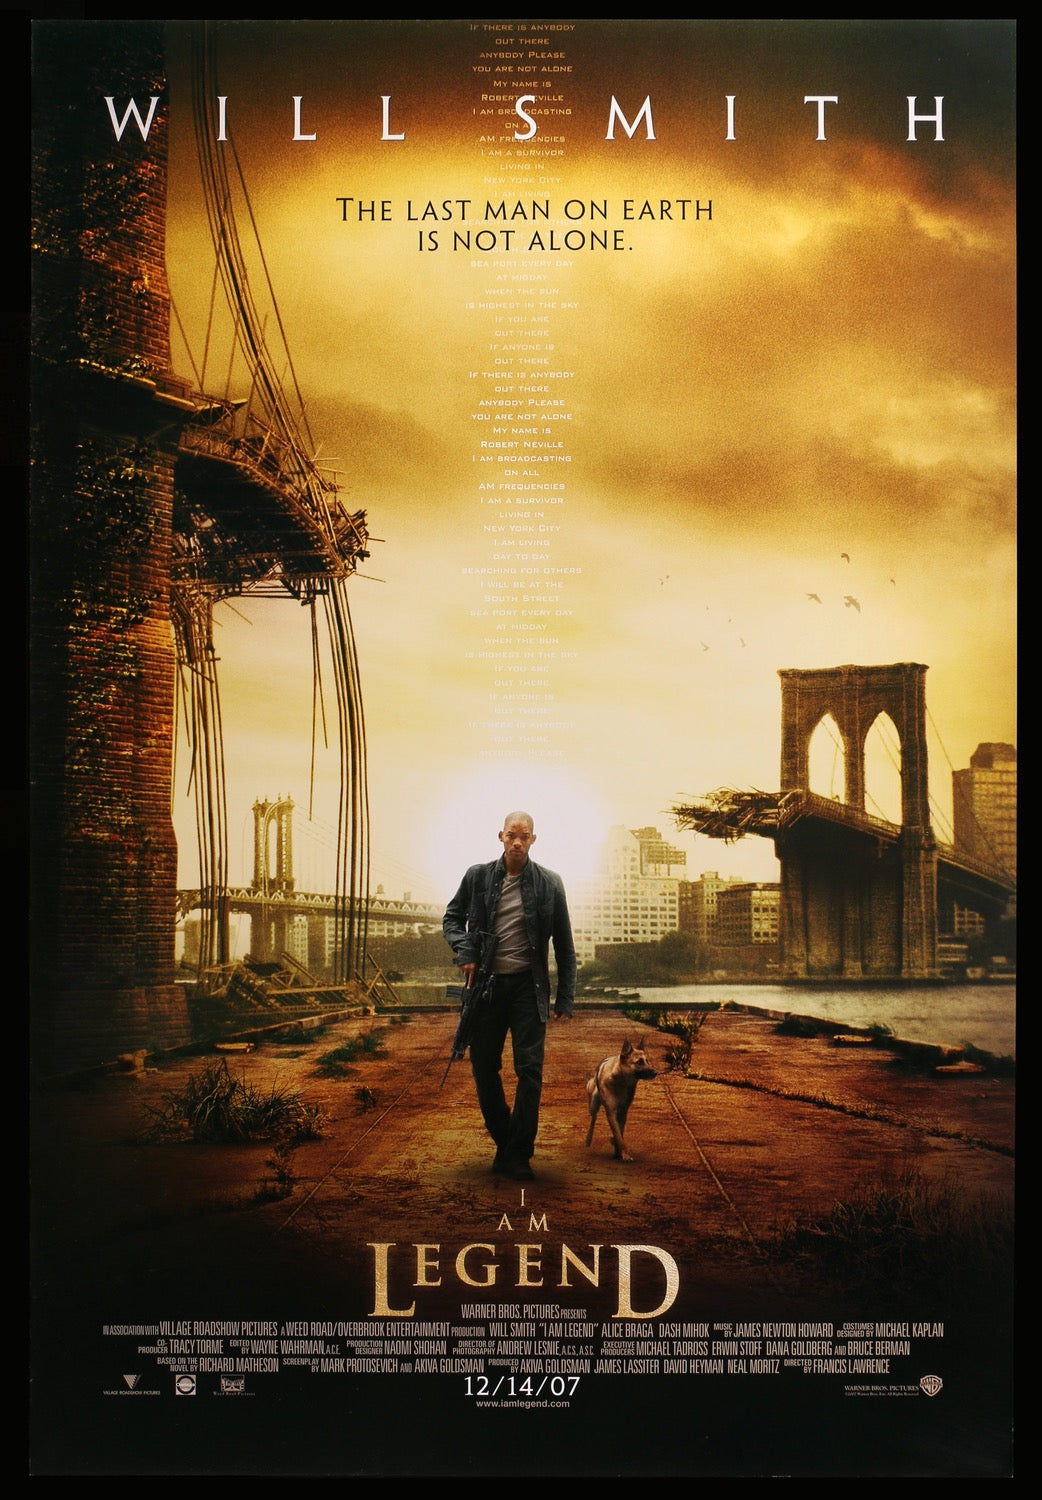 I Am Legend (2007) original movie poster for sale at Original Film Art